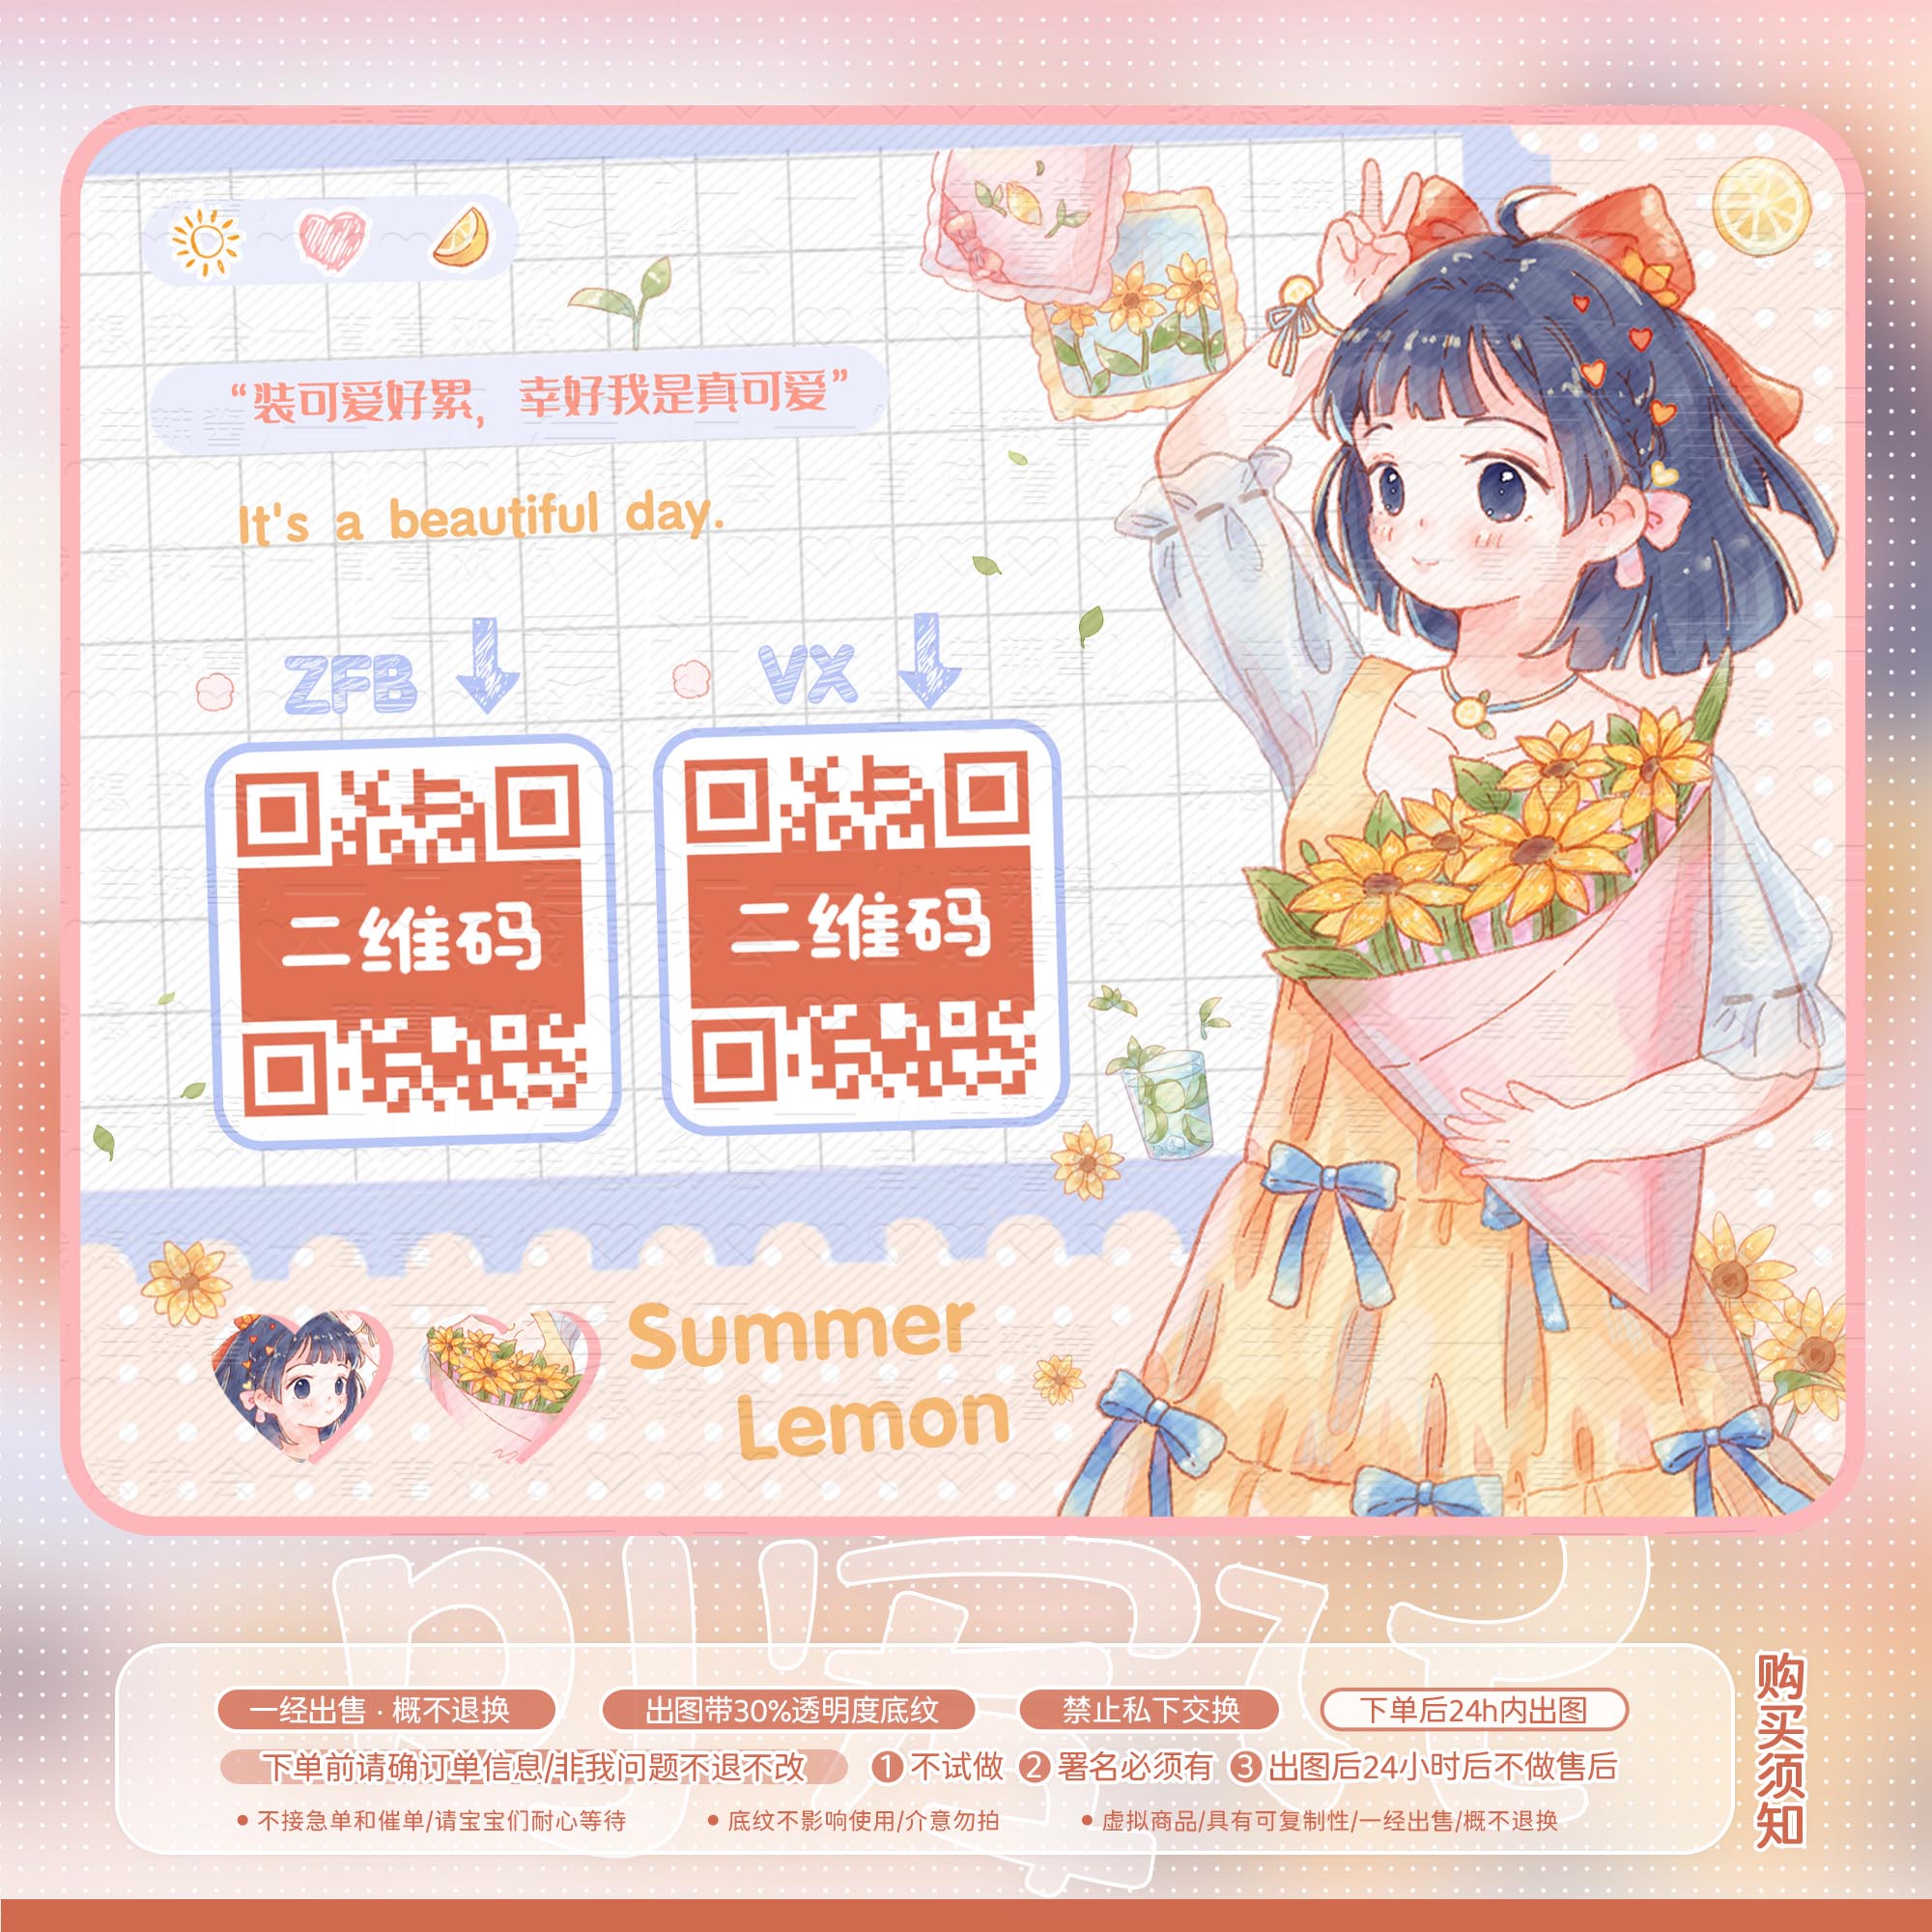 【可爱记】夏日柠檬美化二维码模板美化好友码付款码美化设计094